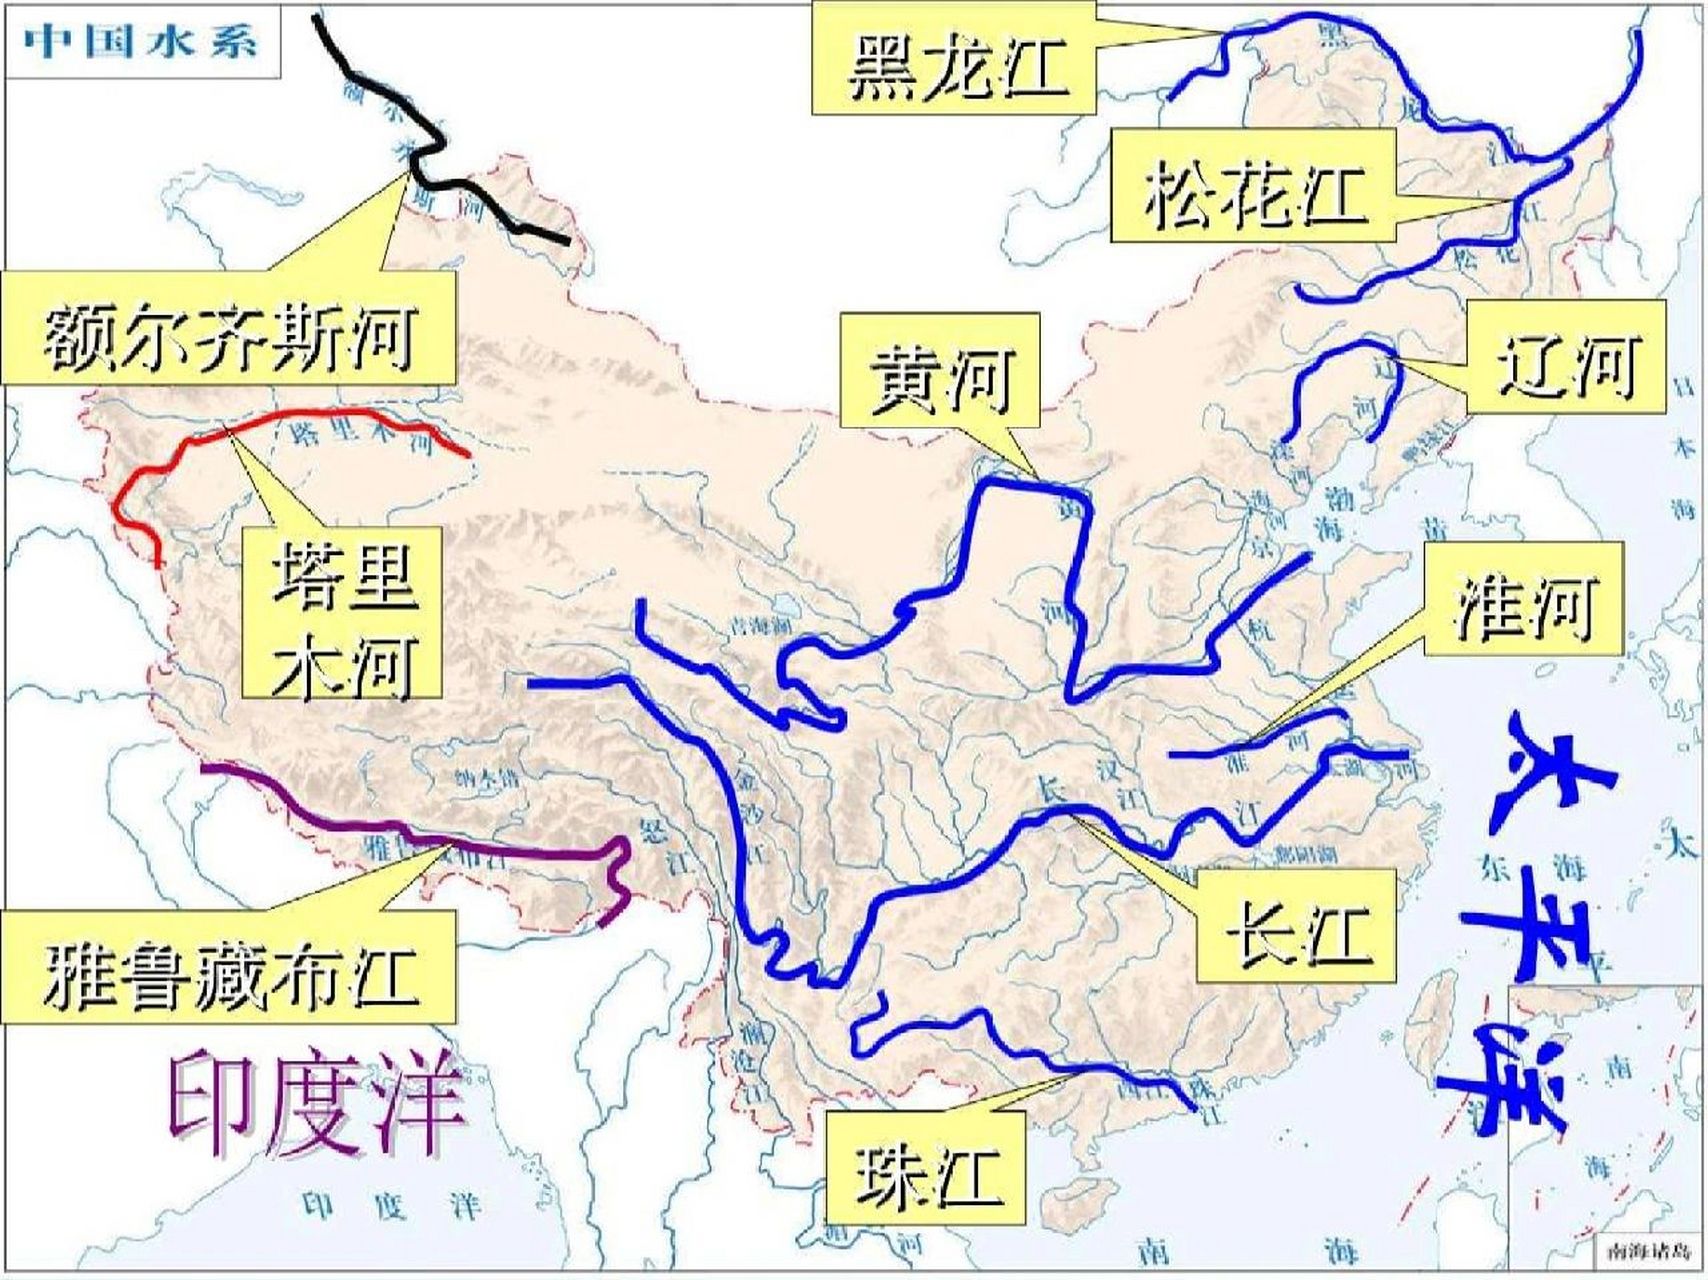 中国河流水系图 1,我国的河流 我国的河流,湖泊分布图如下所示,其中